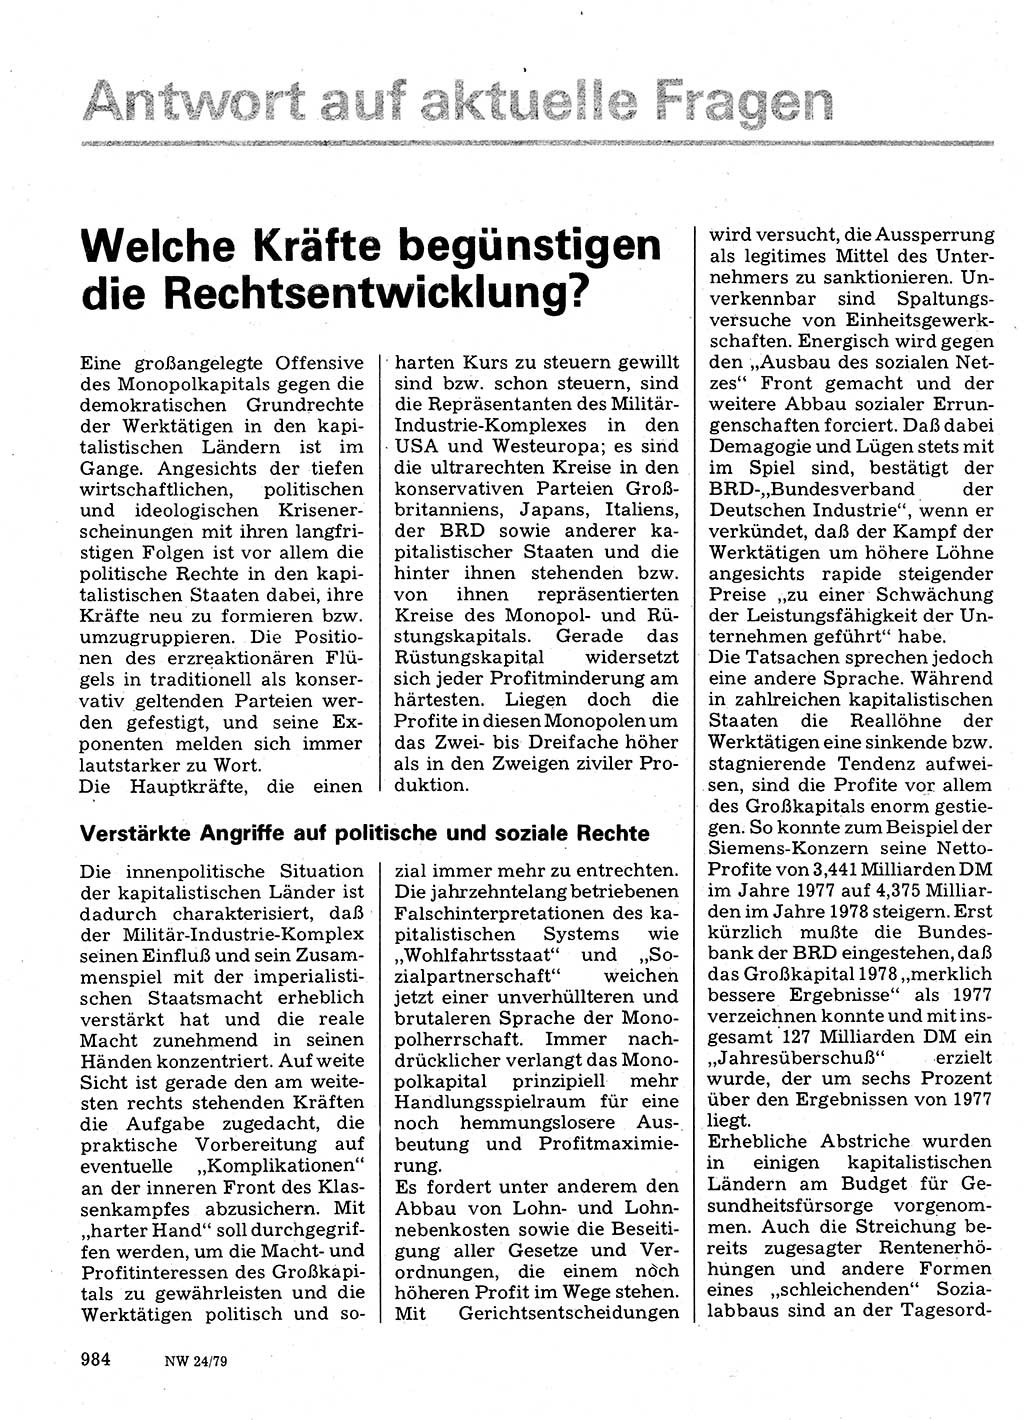 Neuer Weg (NW), Organ des Zentralkomitees (ZK) der SED (Sozialistische Einheitspartei Deutschlands) für Fragen des Parteilebens, 34. Jahrgang [Deutsche Demokratische Republik (DDR)] 1979, Seite 984 (NW ZK SED DDR 1979, S. 984)